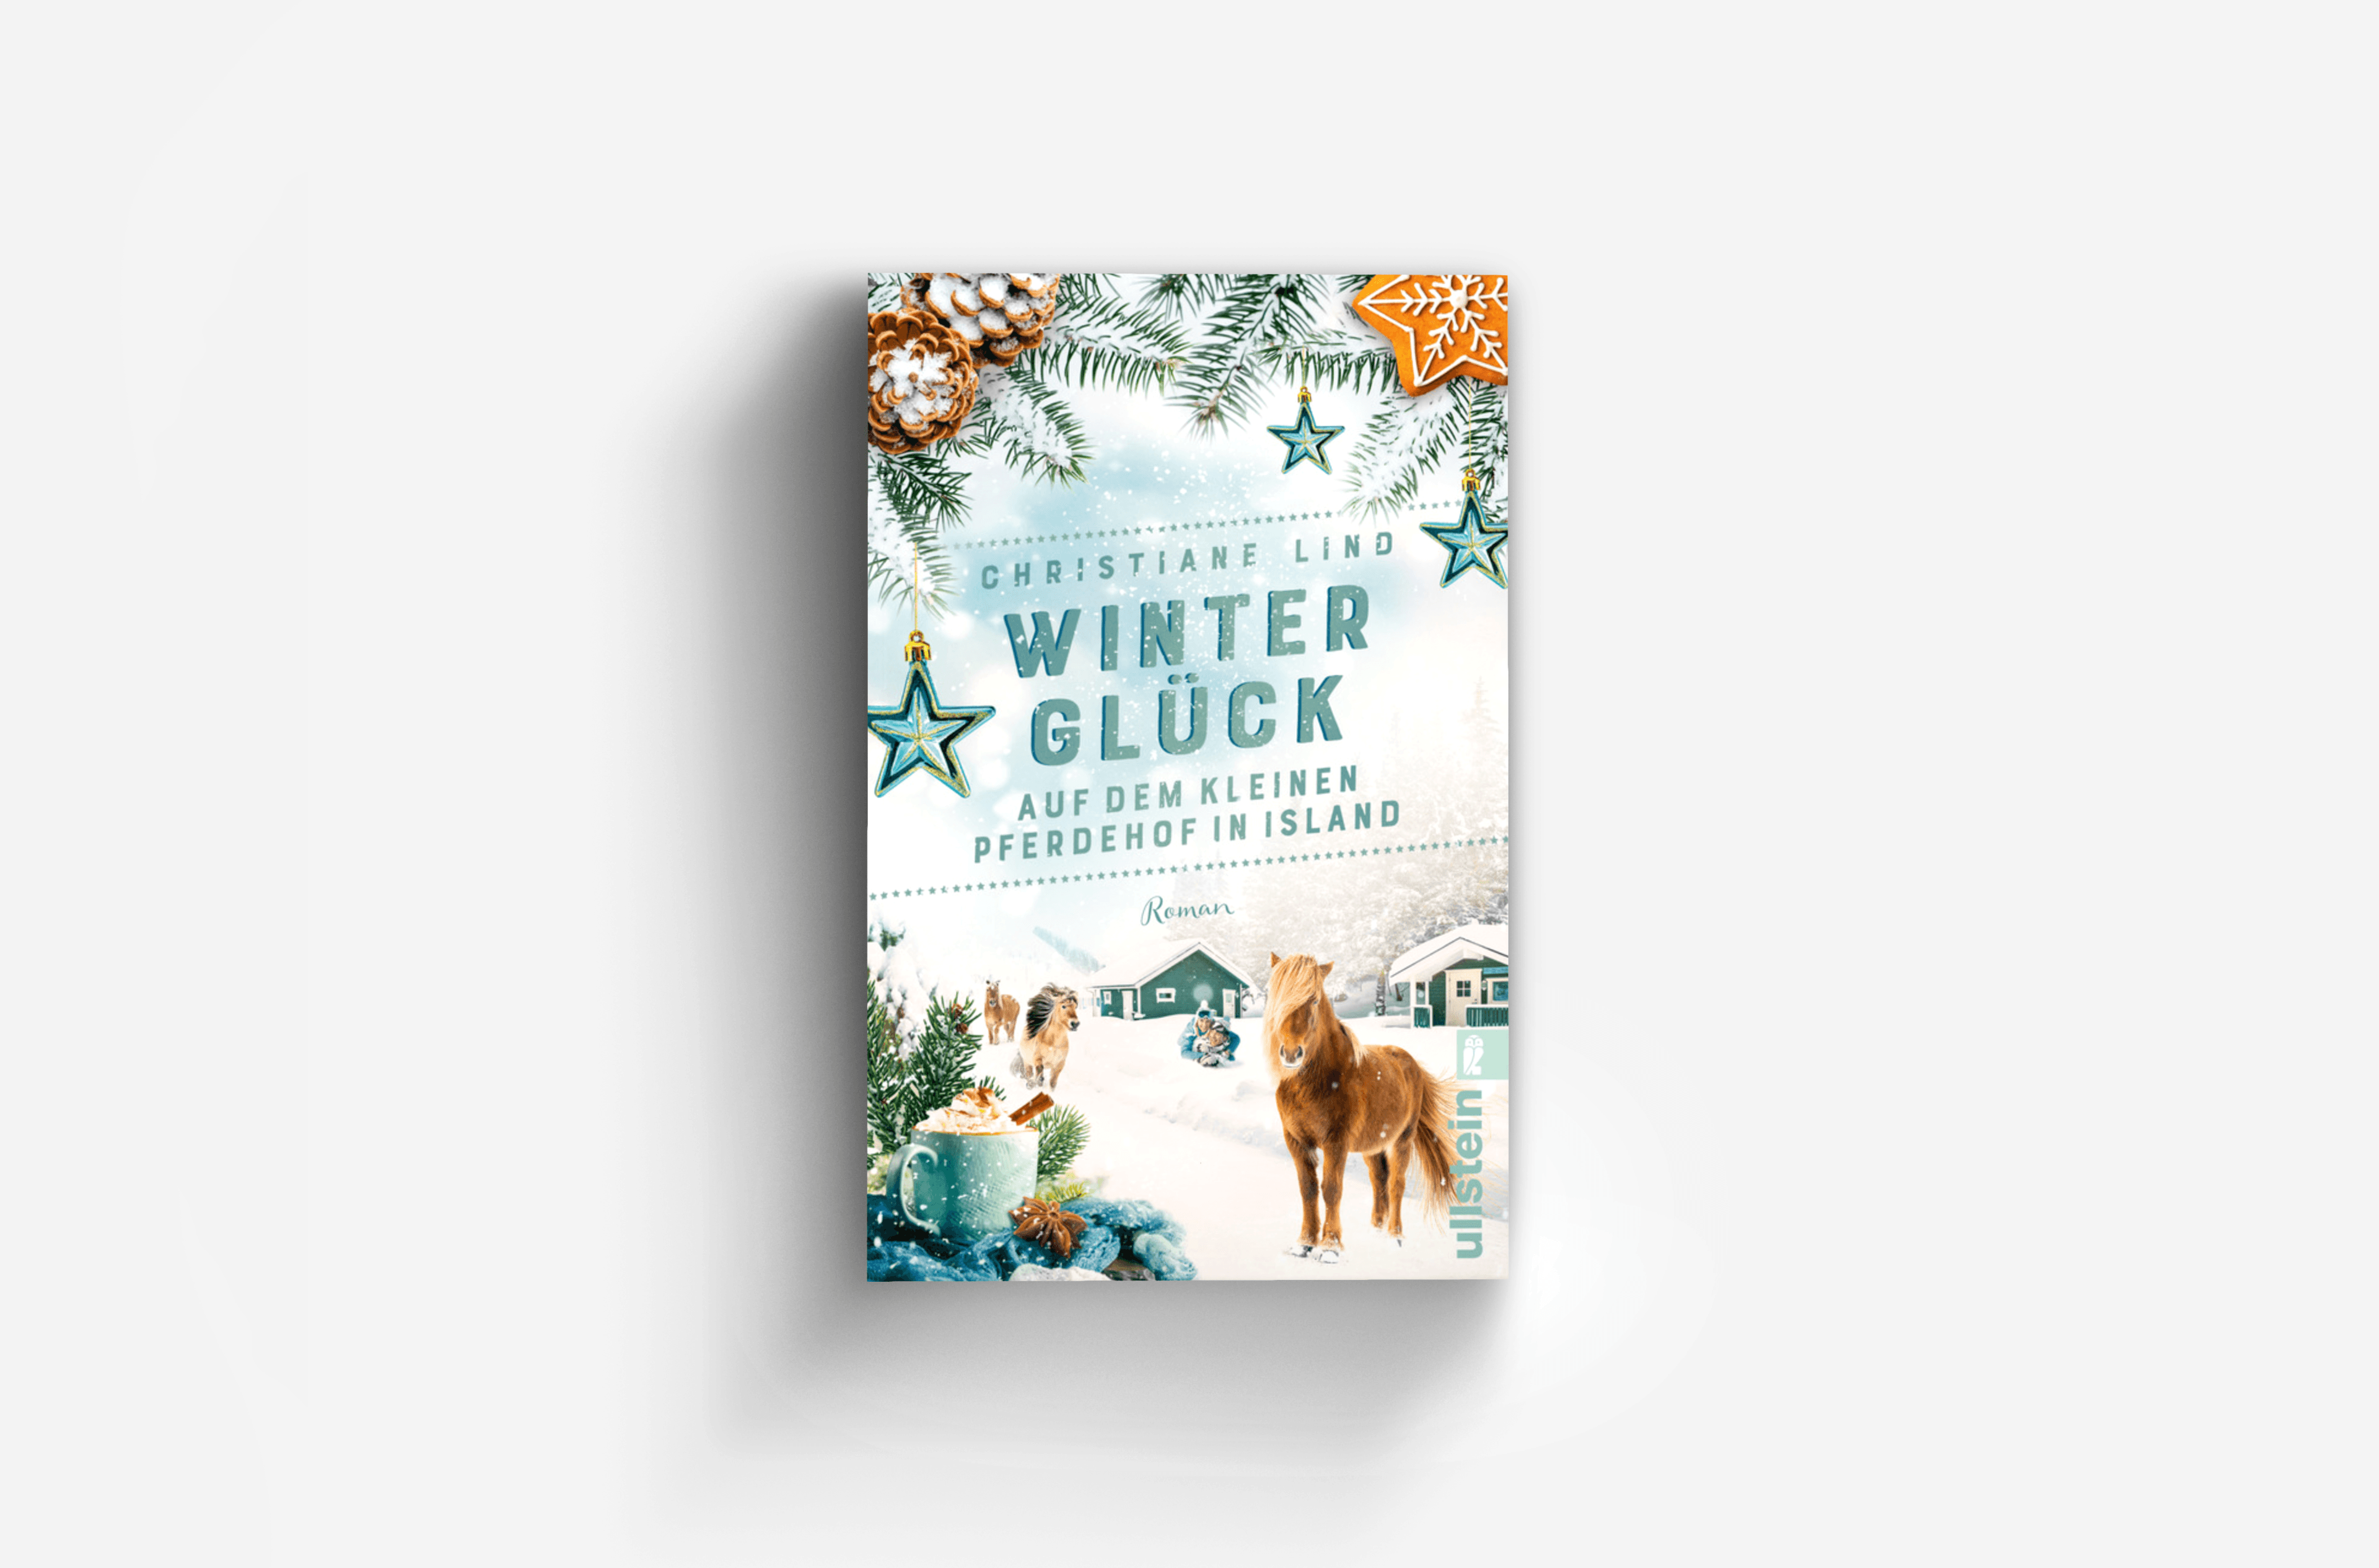 Buchcover von Winterglück auf dem kleinen Pferdehof in Island